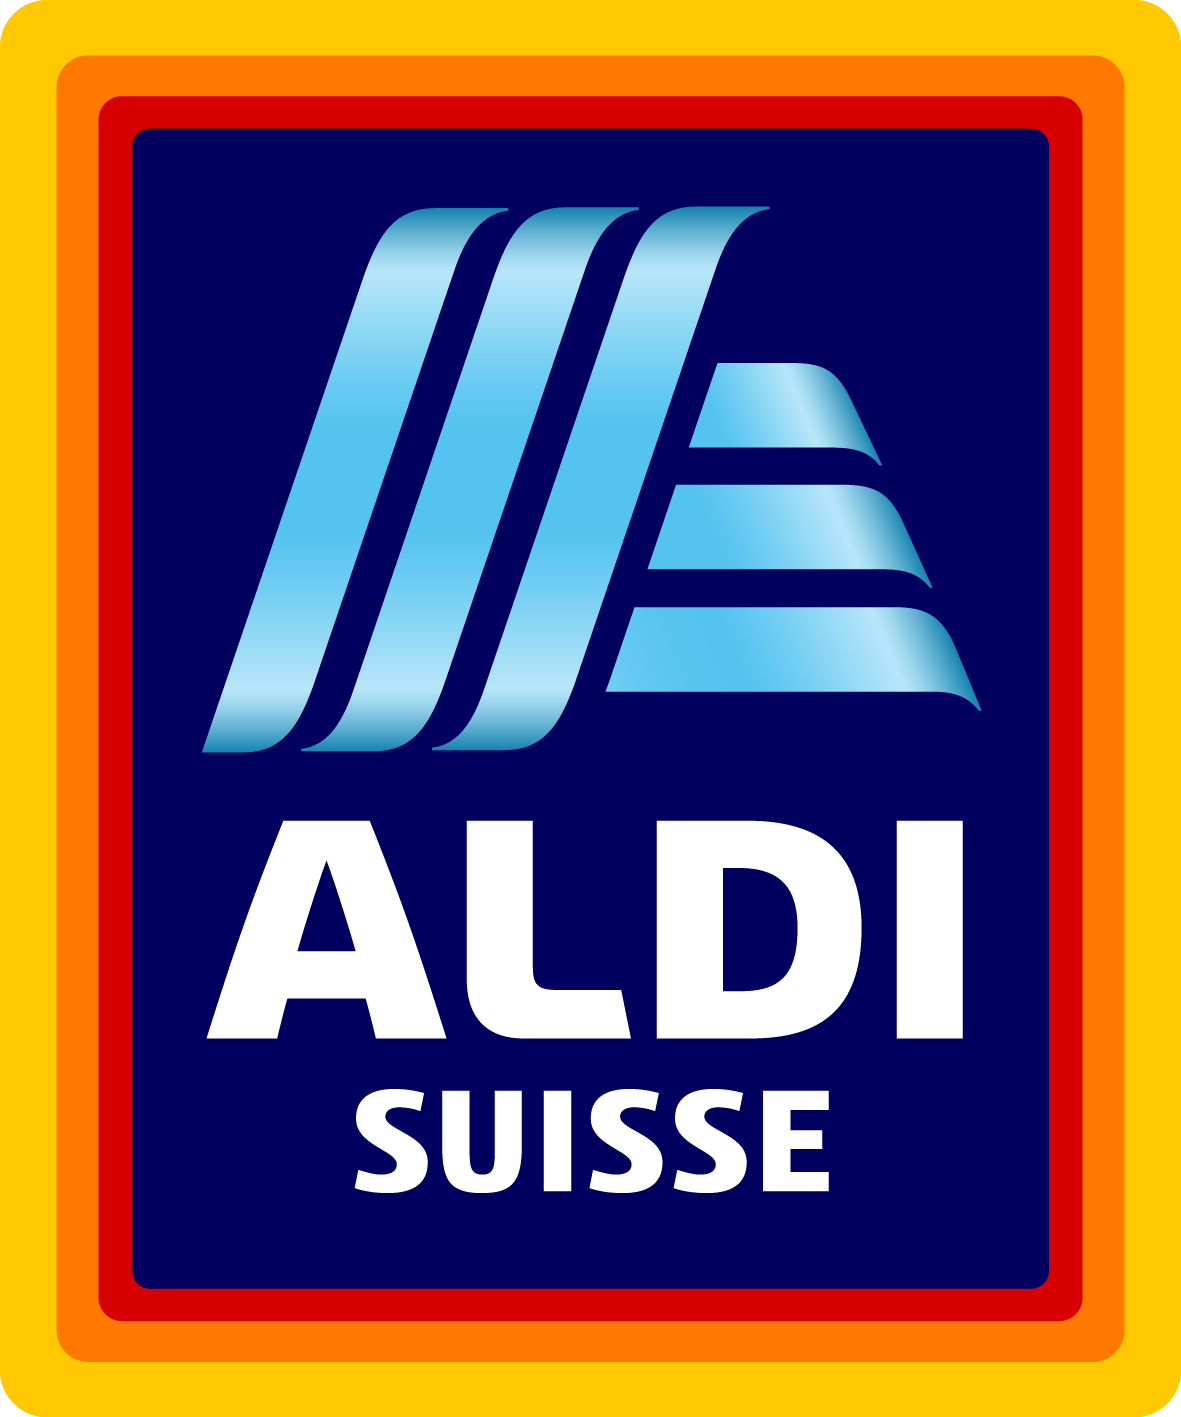 Aldi-suisse